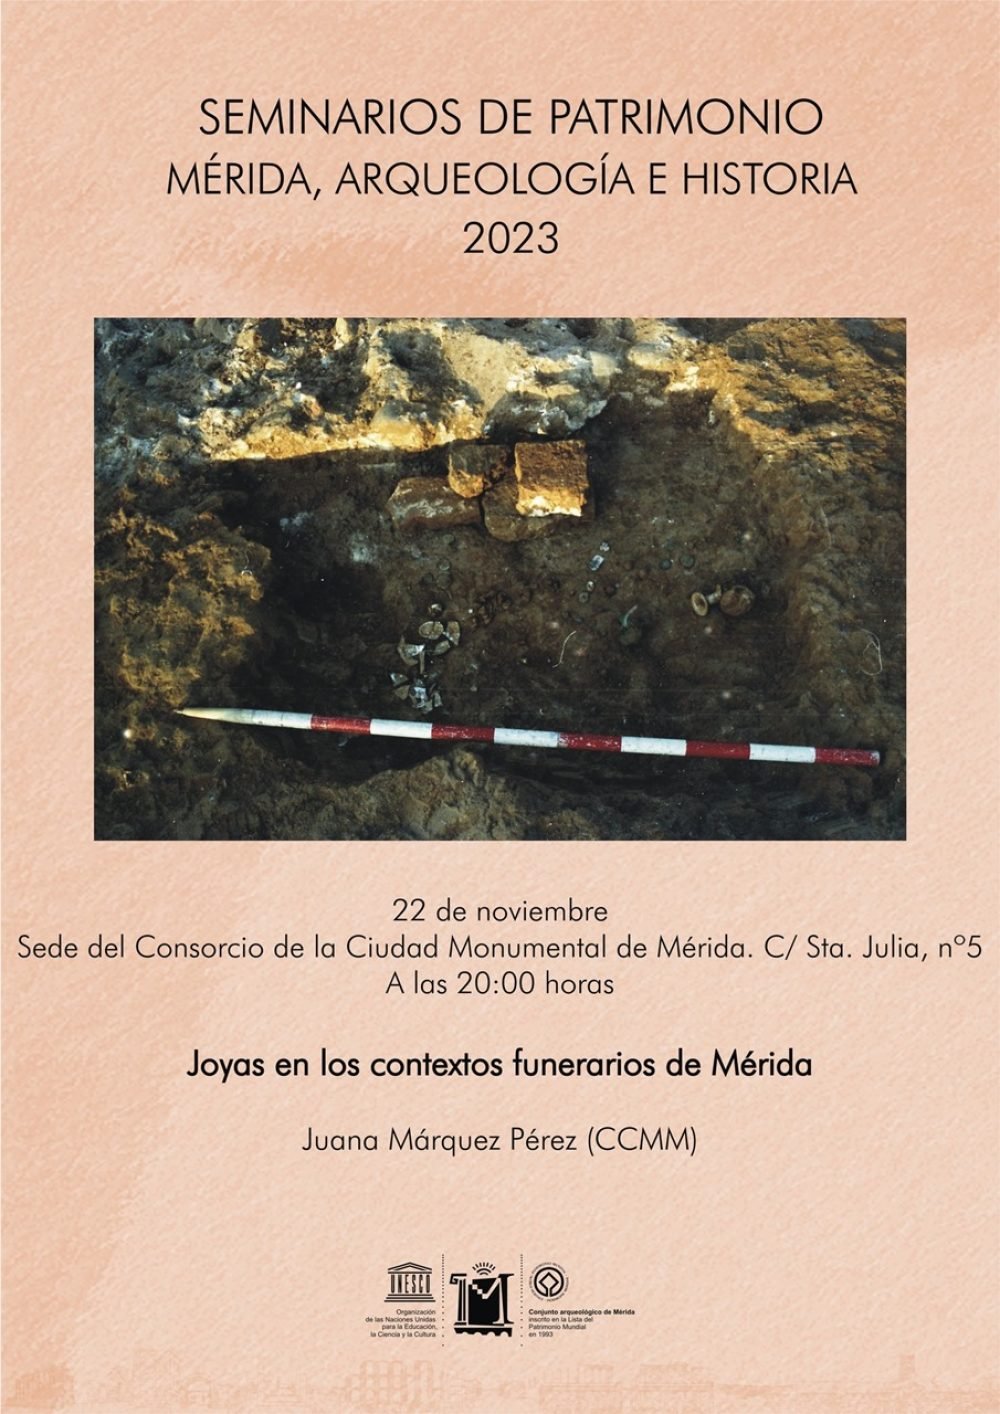 Seminarios de Patrimonio del Consorcio: “Joyas en los contextos funerarios de Mérida”